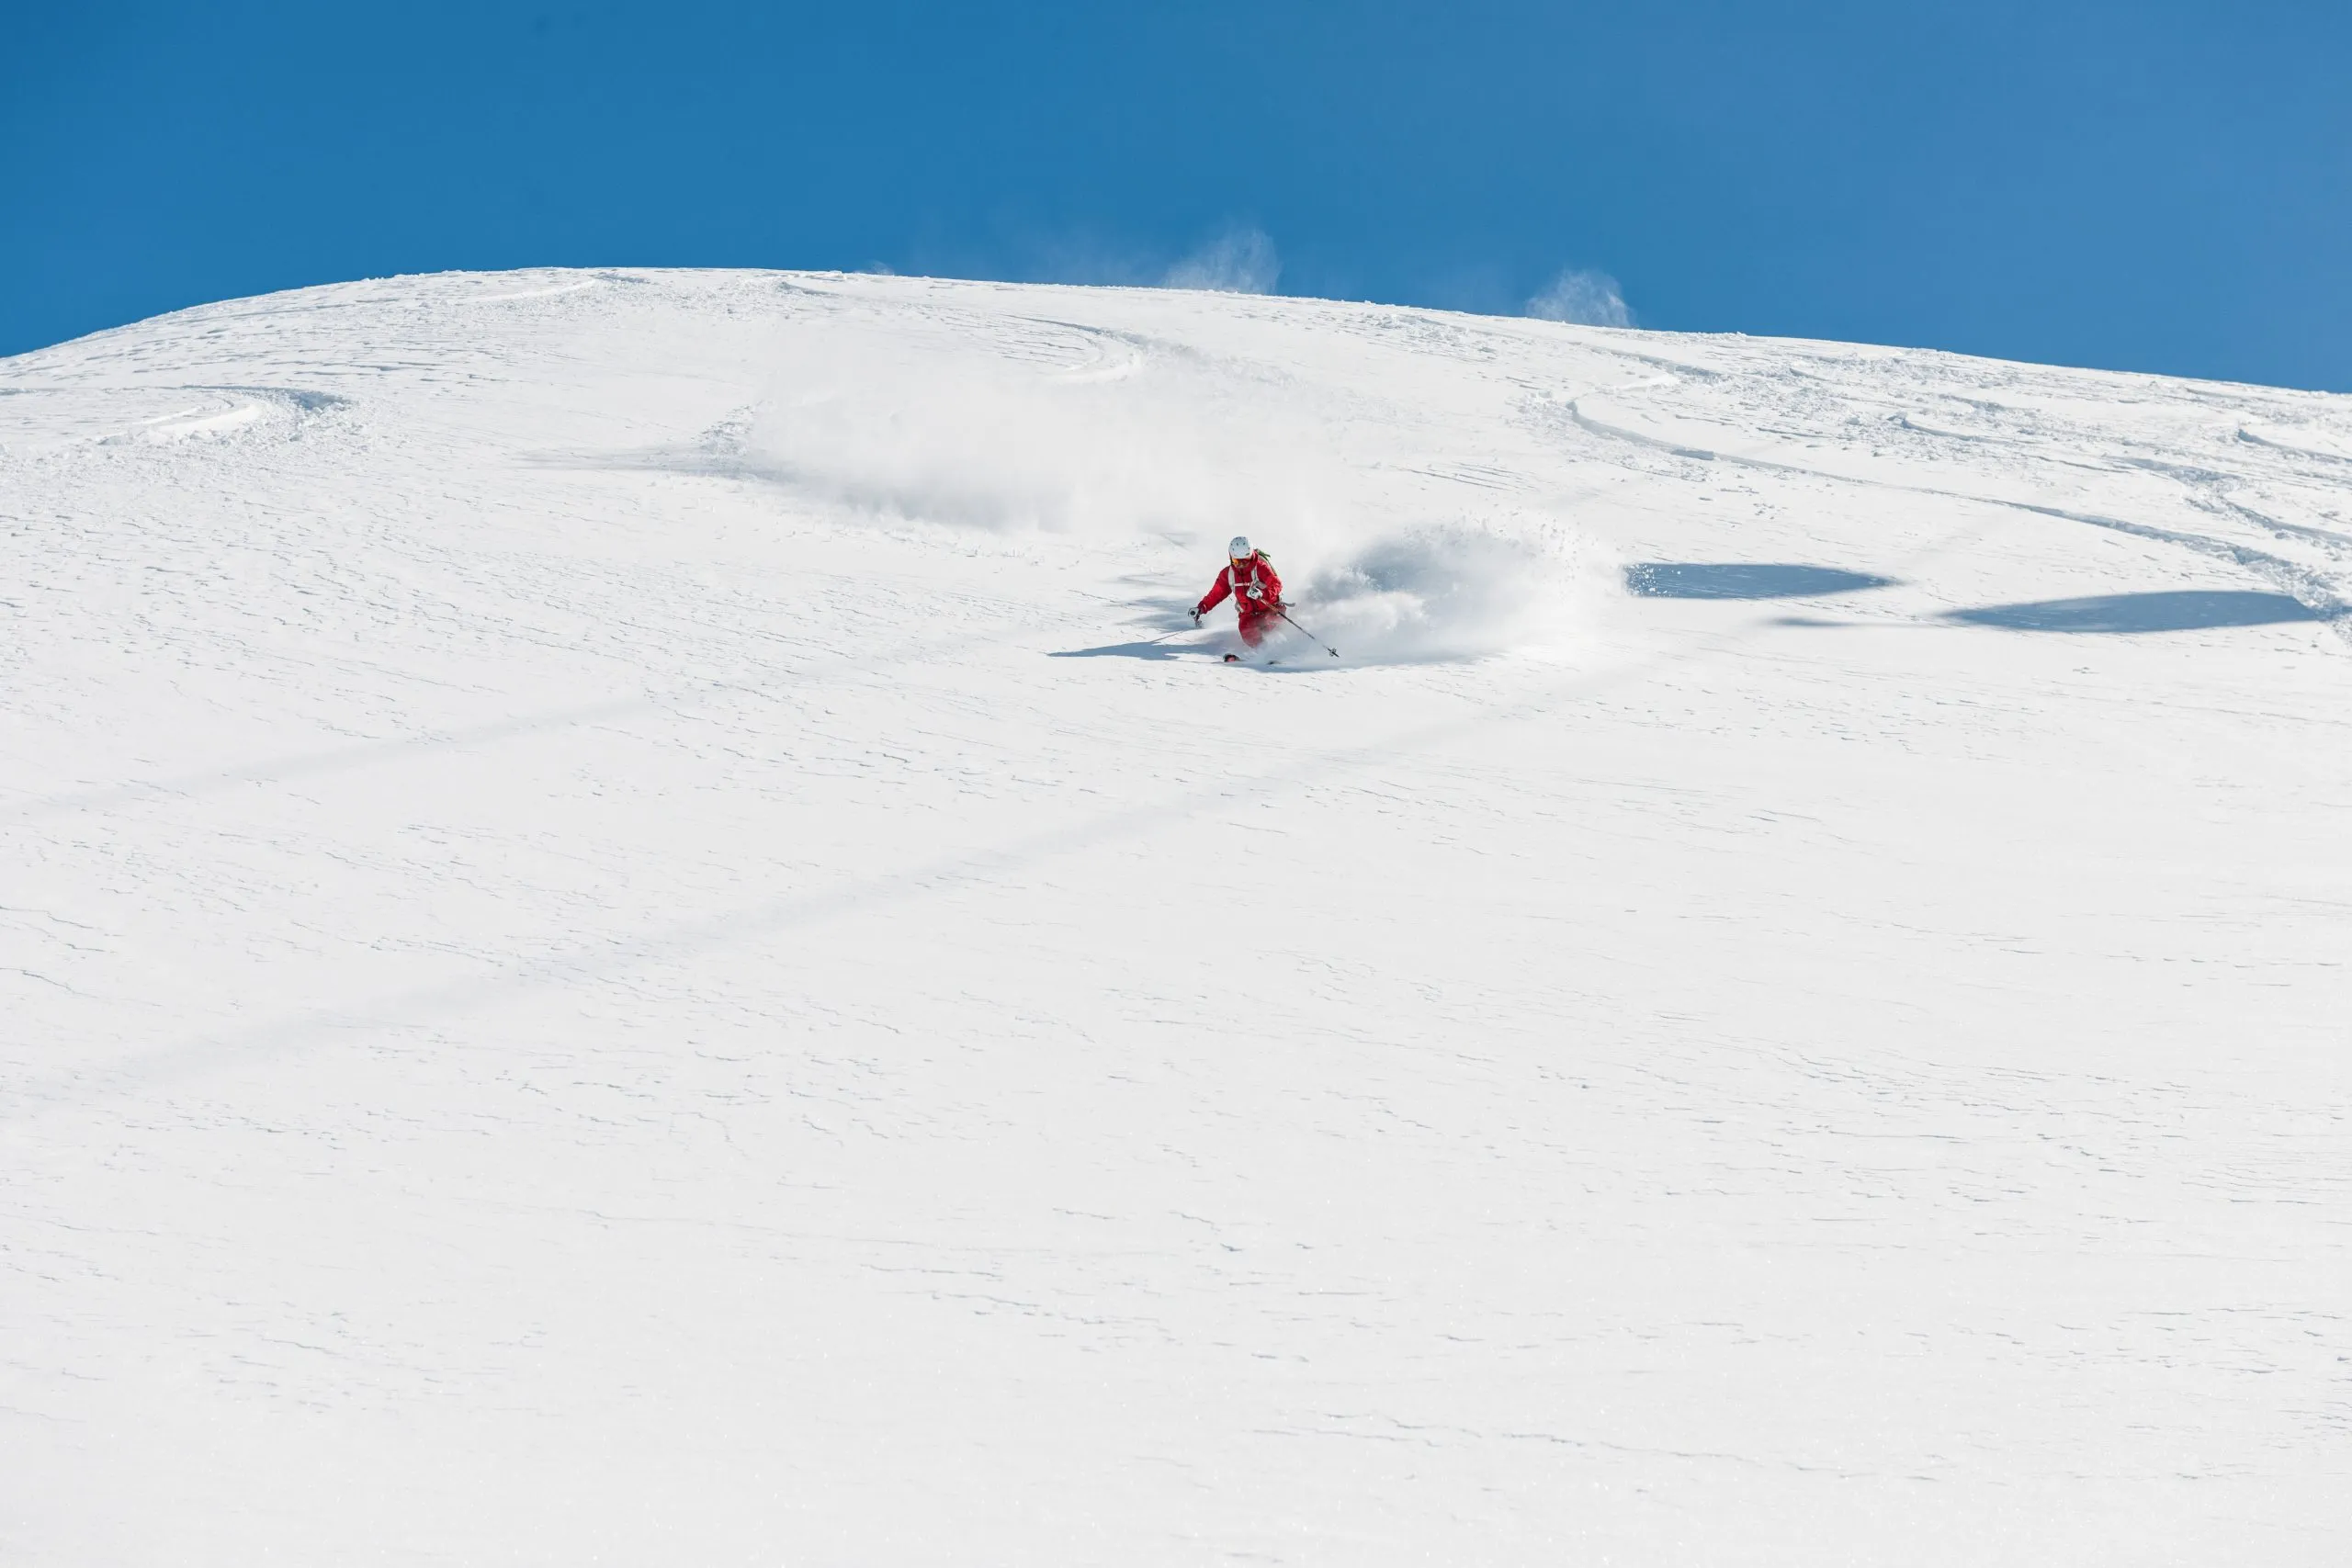 Freeride-Skifahrer fährt schnell bergab. Archivbild eines Freeride-Skifahrers, der in tiefem Pulverschnee schnell bergab fährt. Im Hintergrund ist ein schöner, blauer Himmel zu sehen. Der Standort ist Hochgurgl